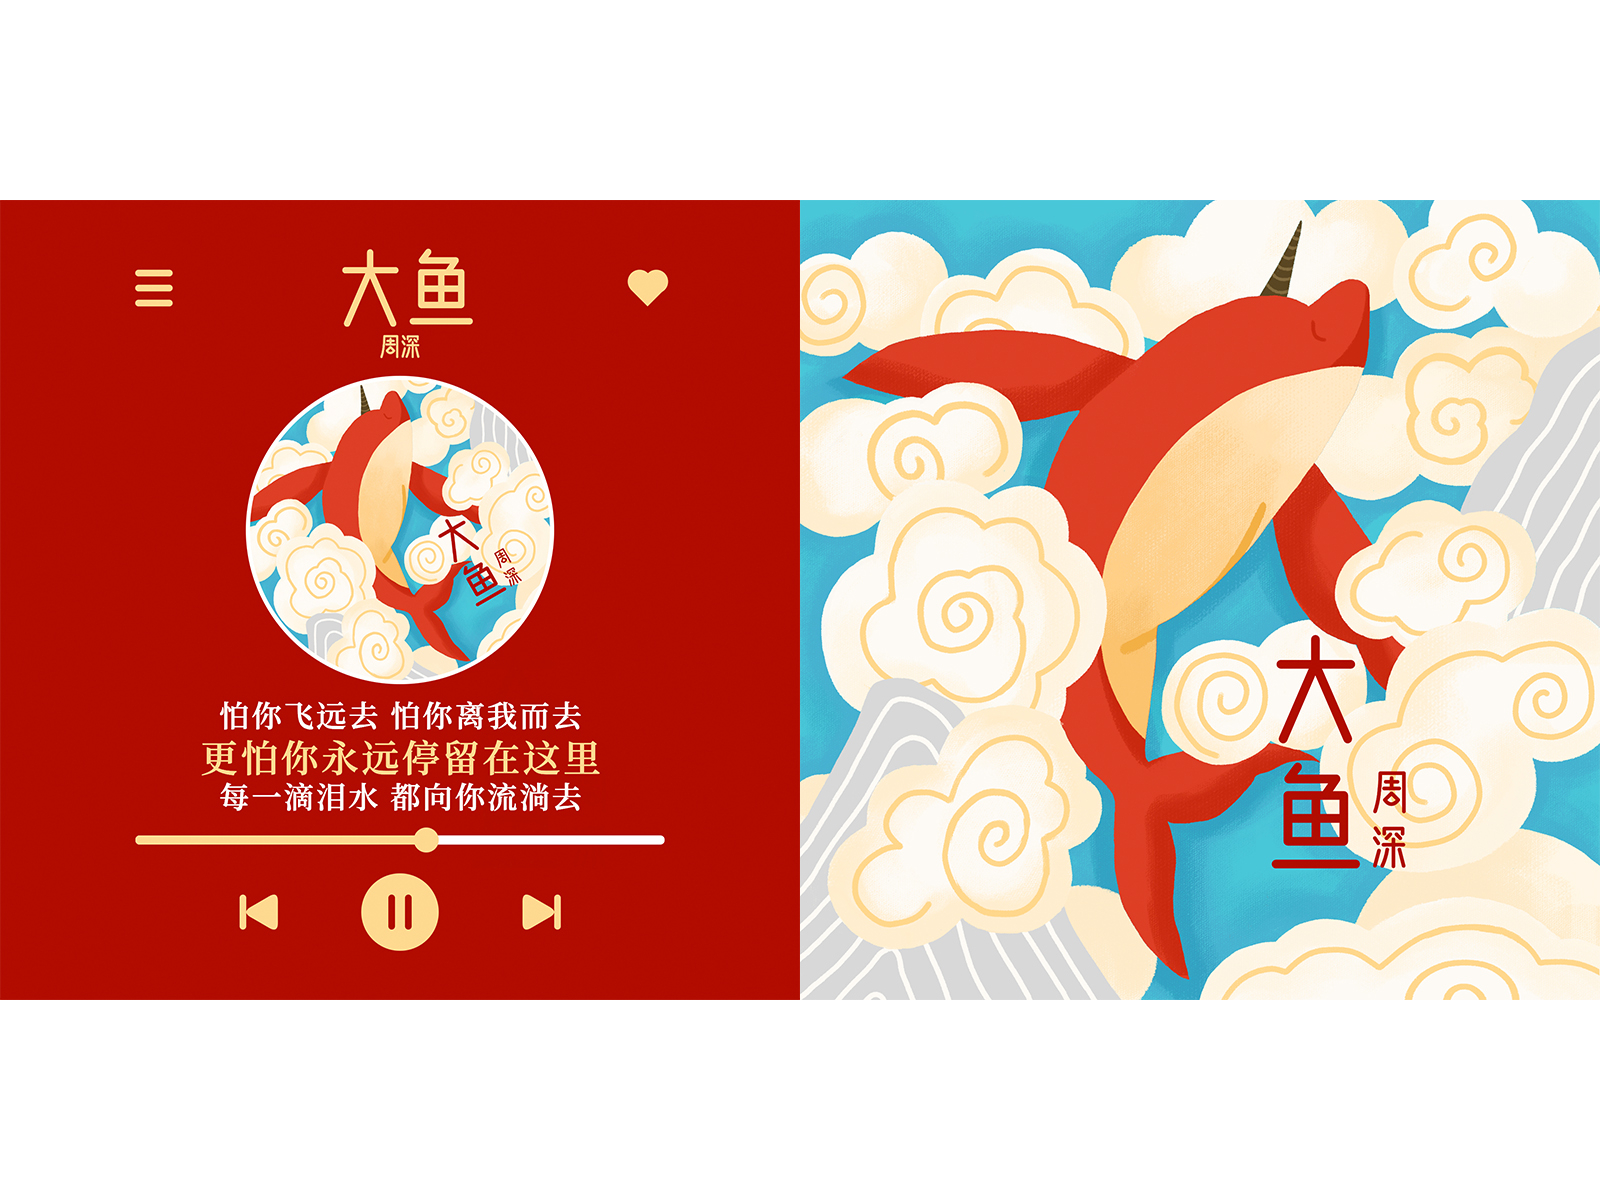 周深《大鱼》 song cover design music design illustration